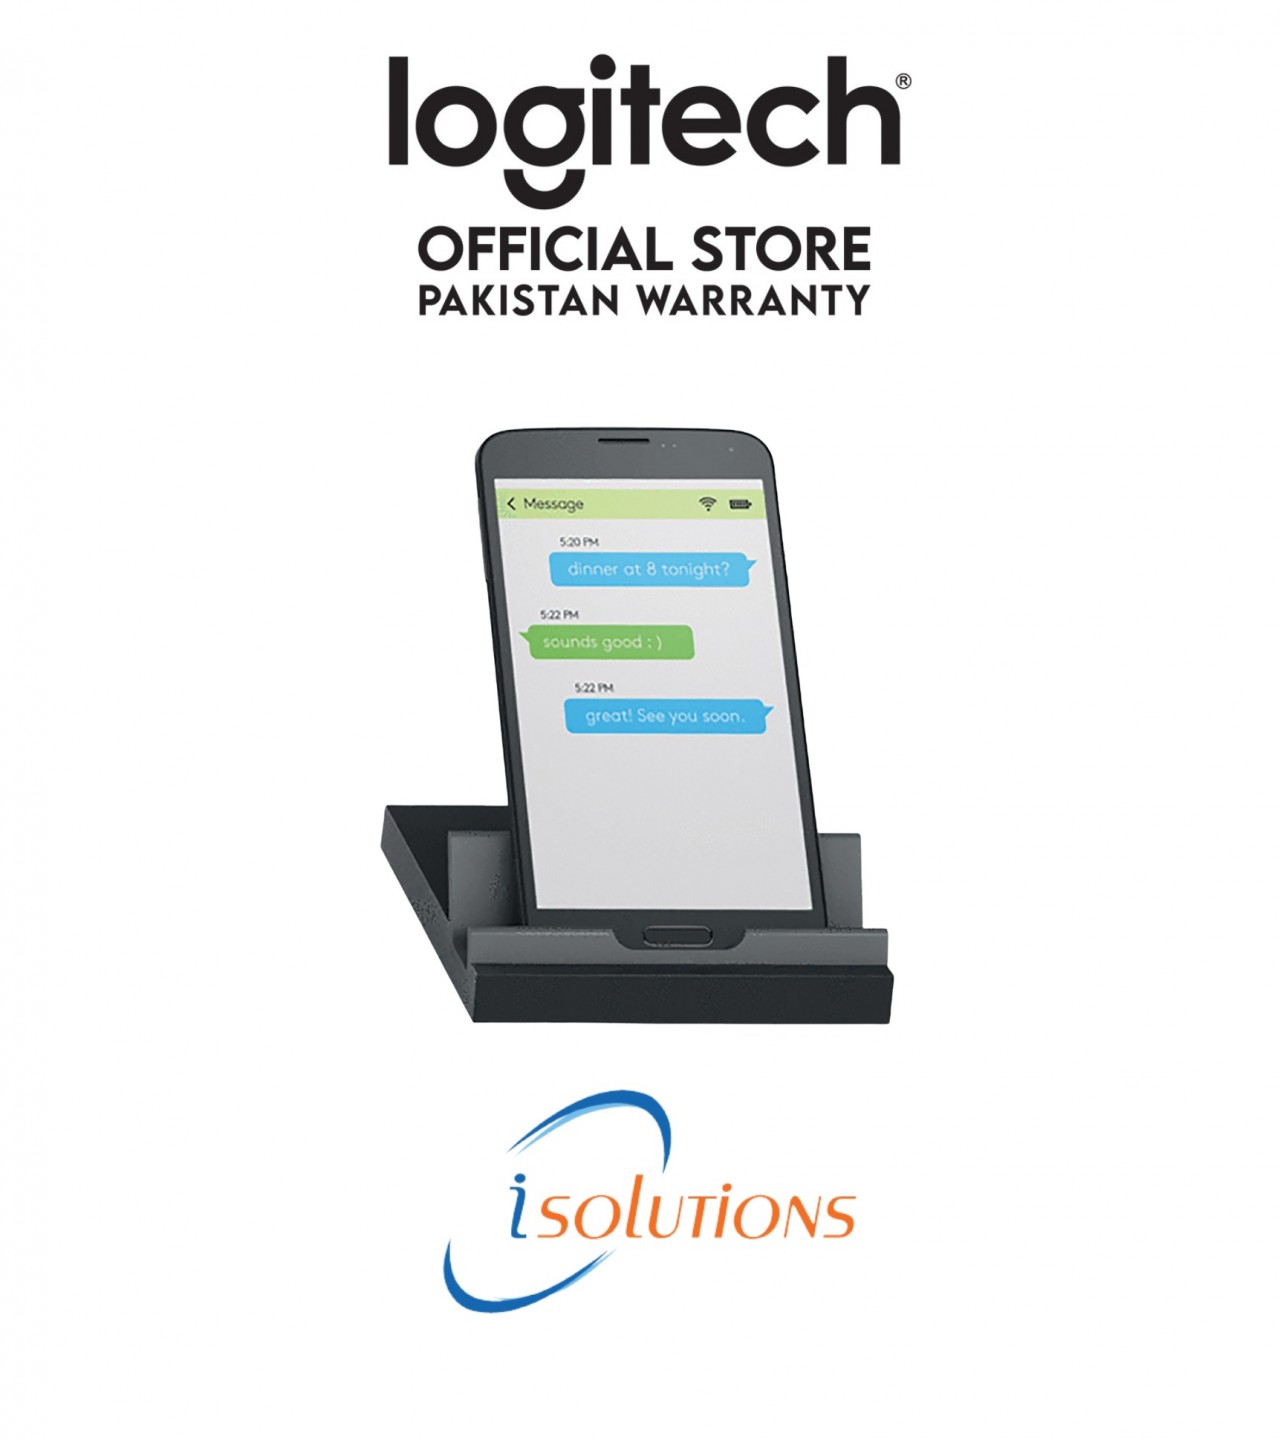 Logitech K375s Multi-Device Bluetooth Keyboard